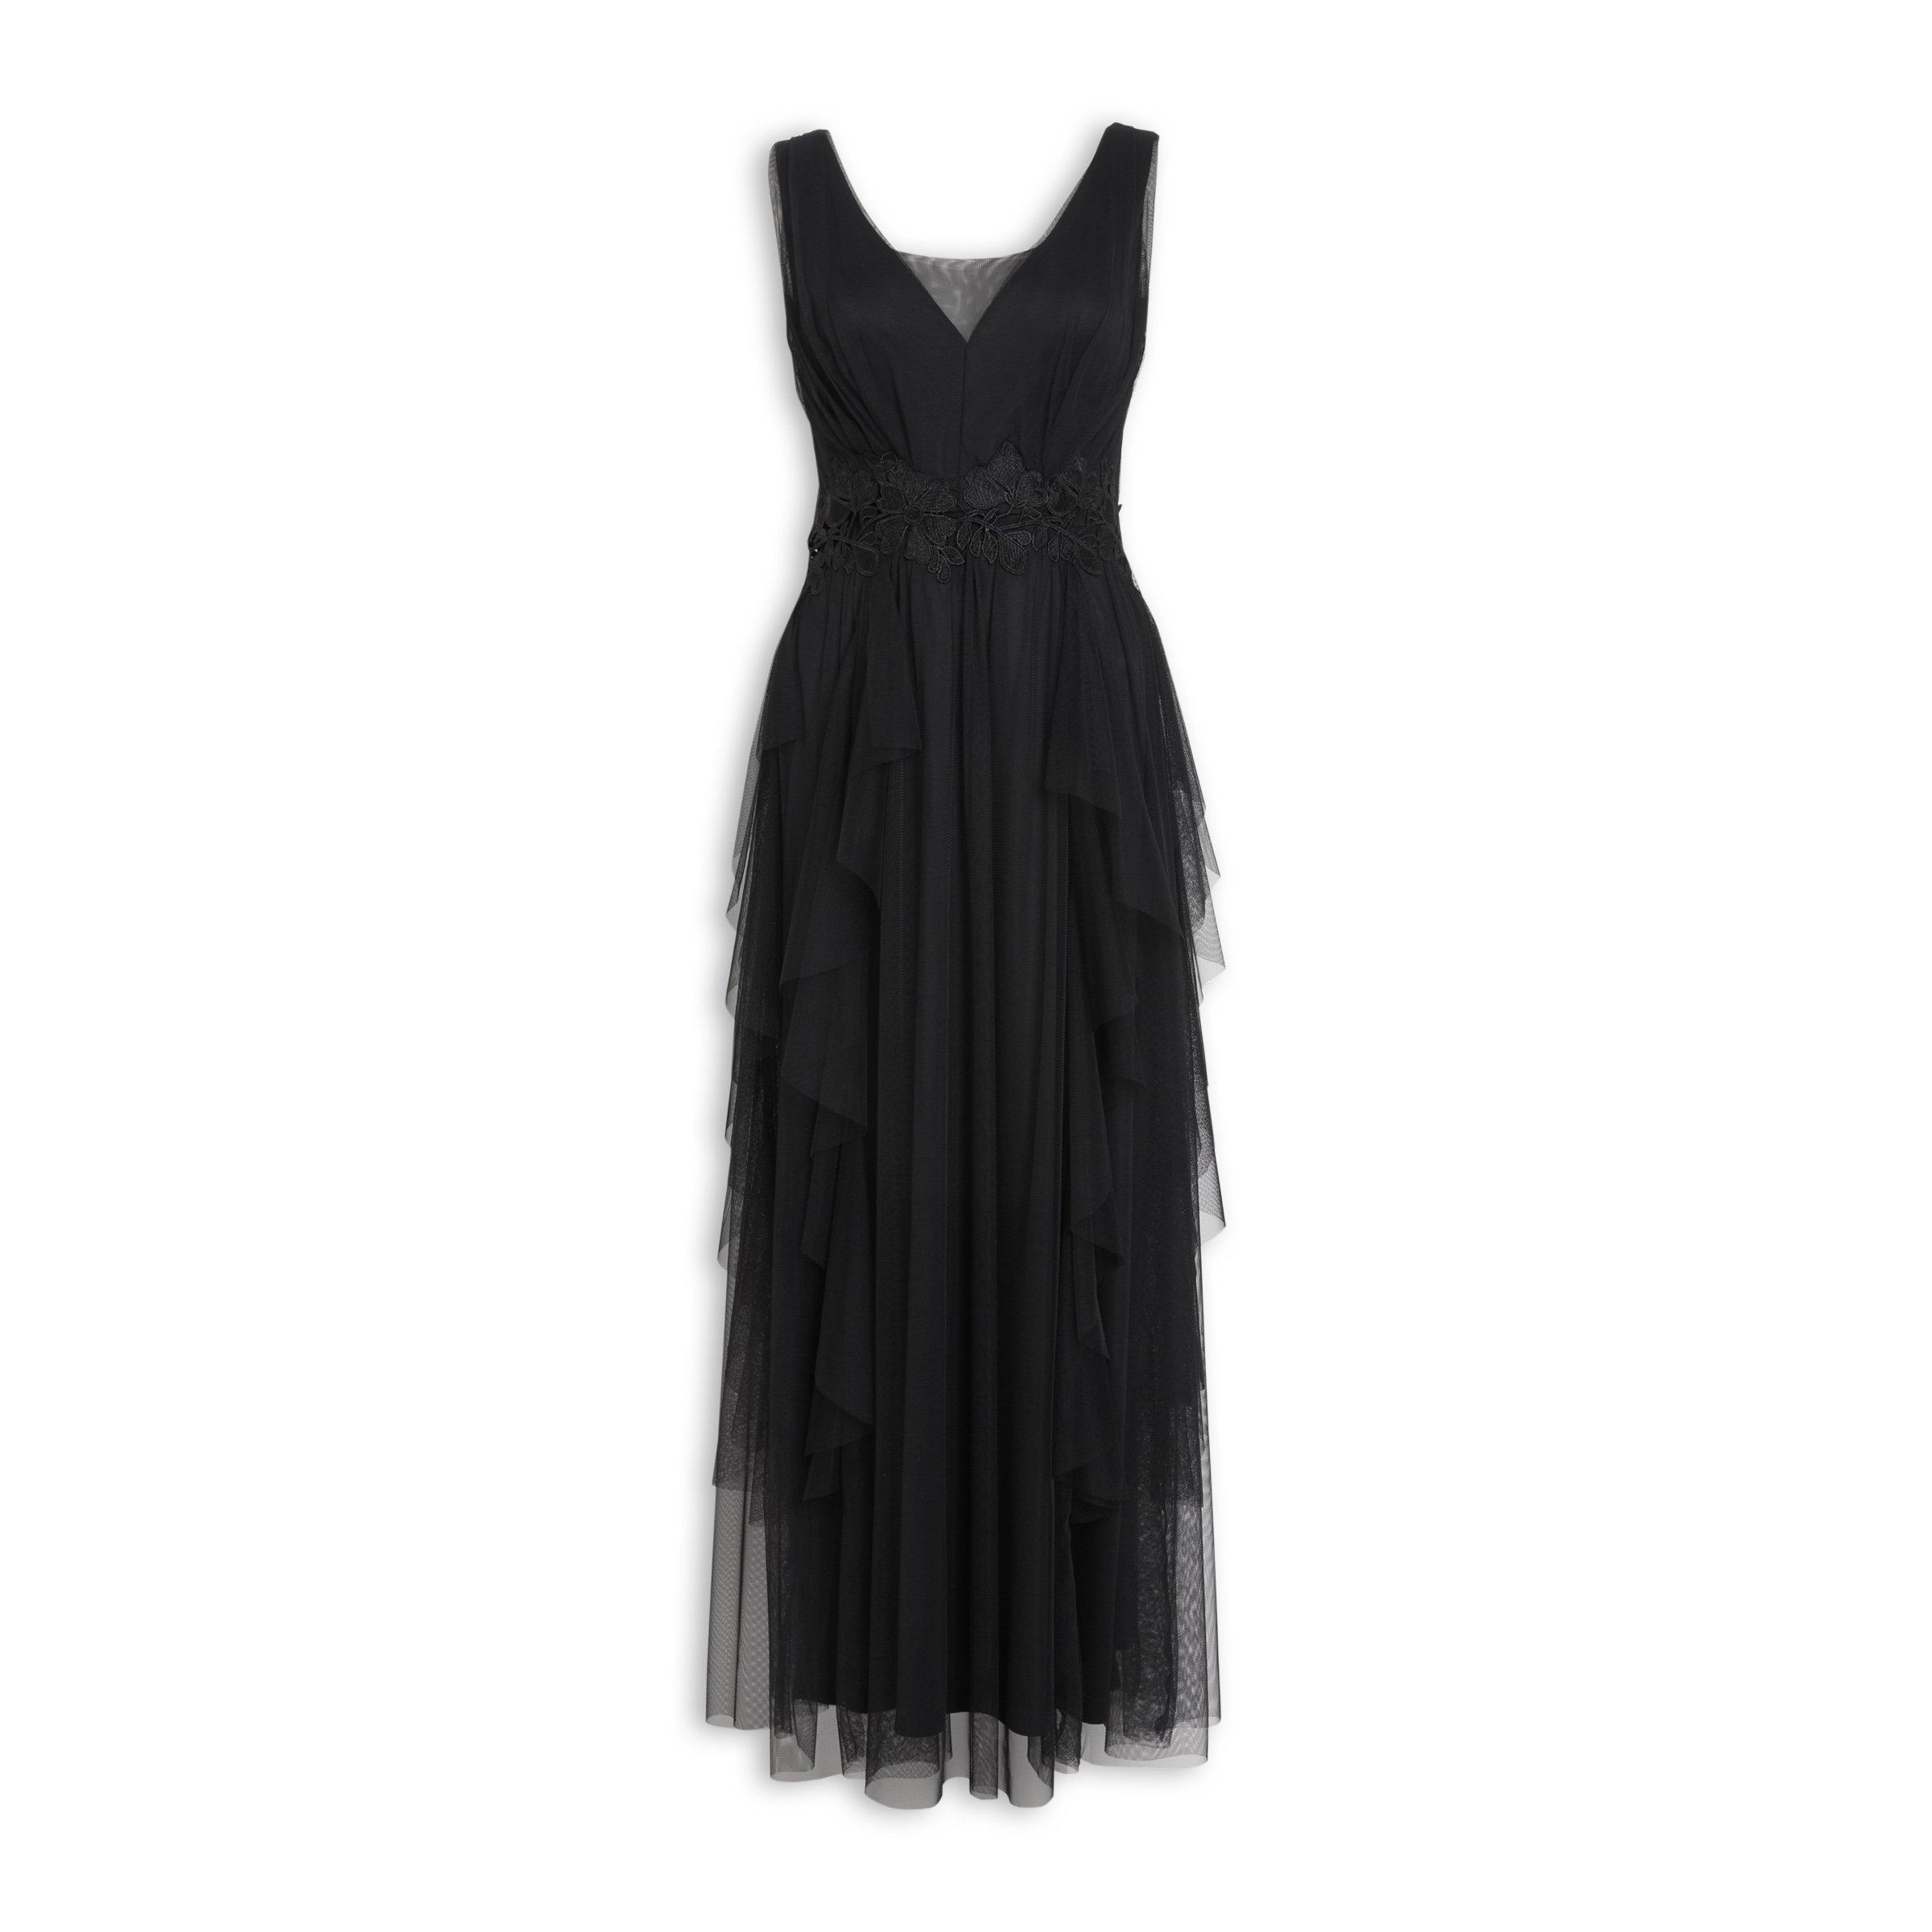 Buy Truworths Black Maxi Dress Online | Truworths